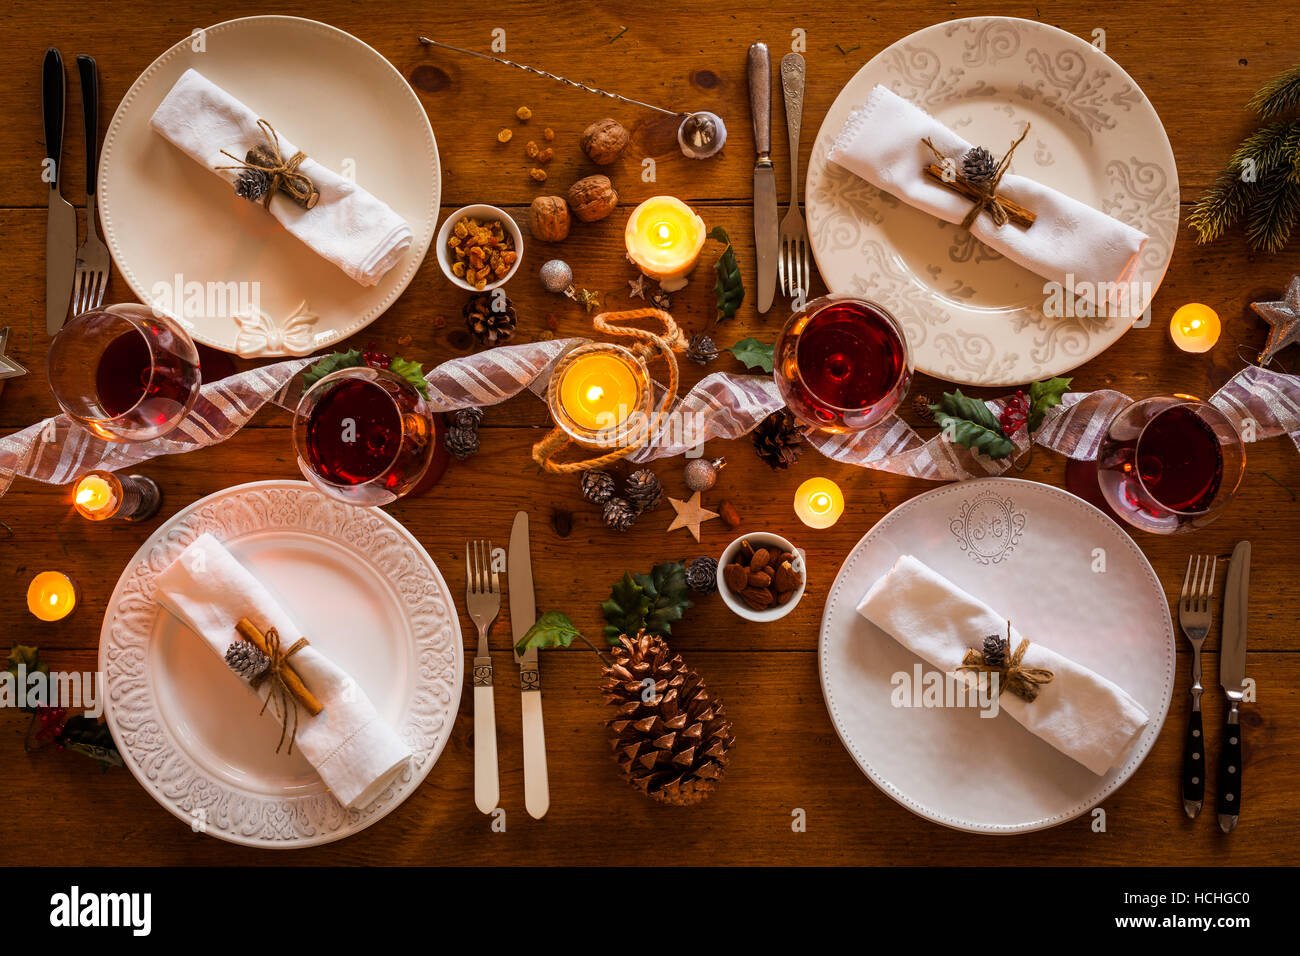 Tavola di Natale impostazione per cena in famiglia presso un accogliente tavolo rustico con candele e decorazioni. Vista dall'alto. Foto Stock